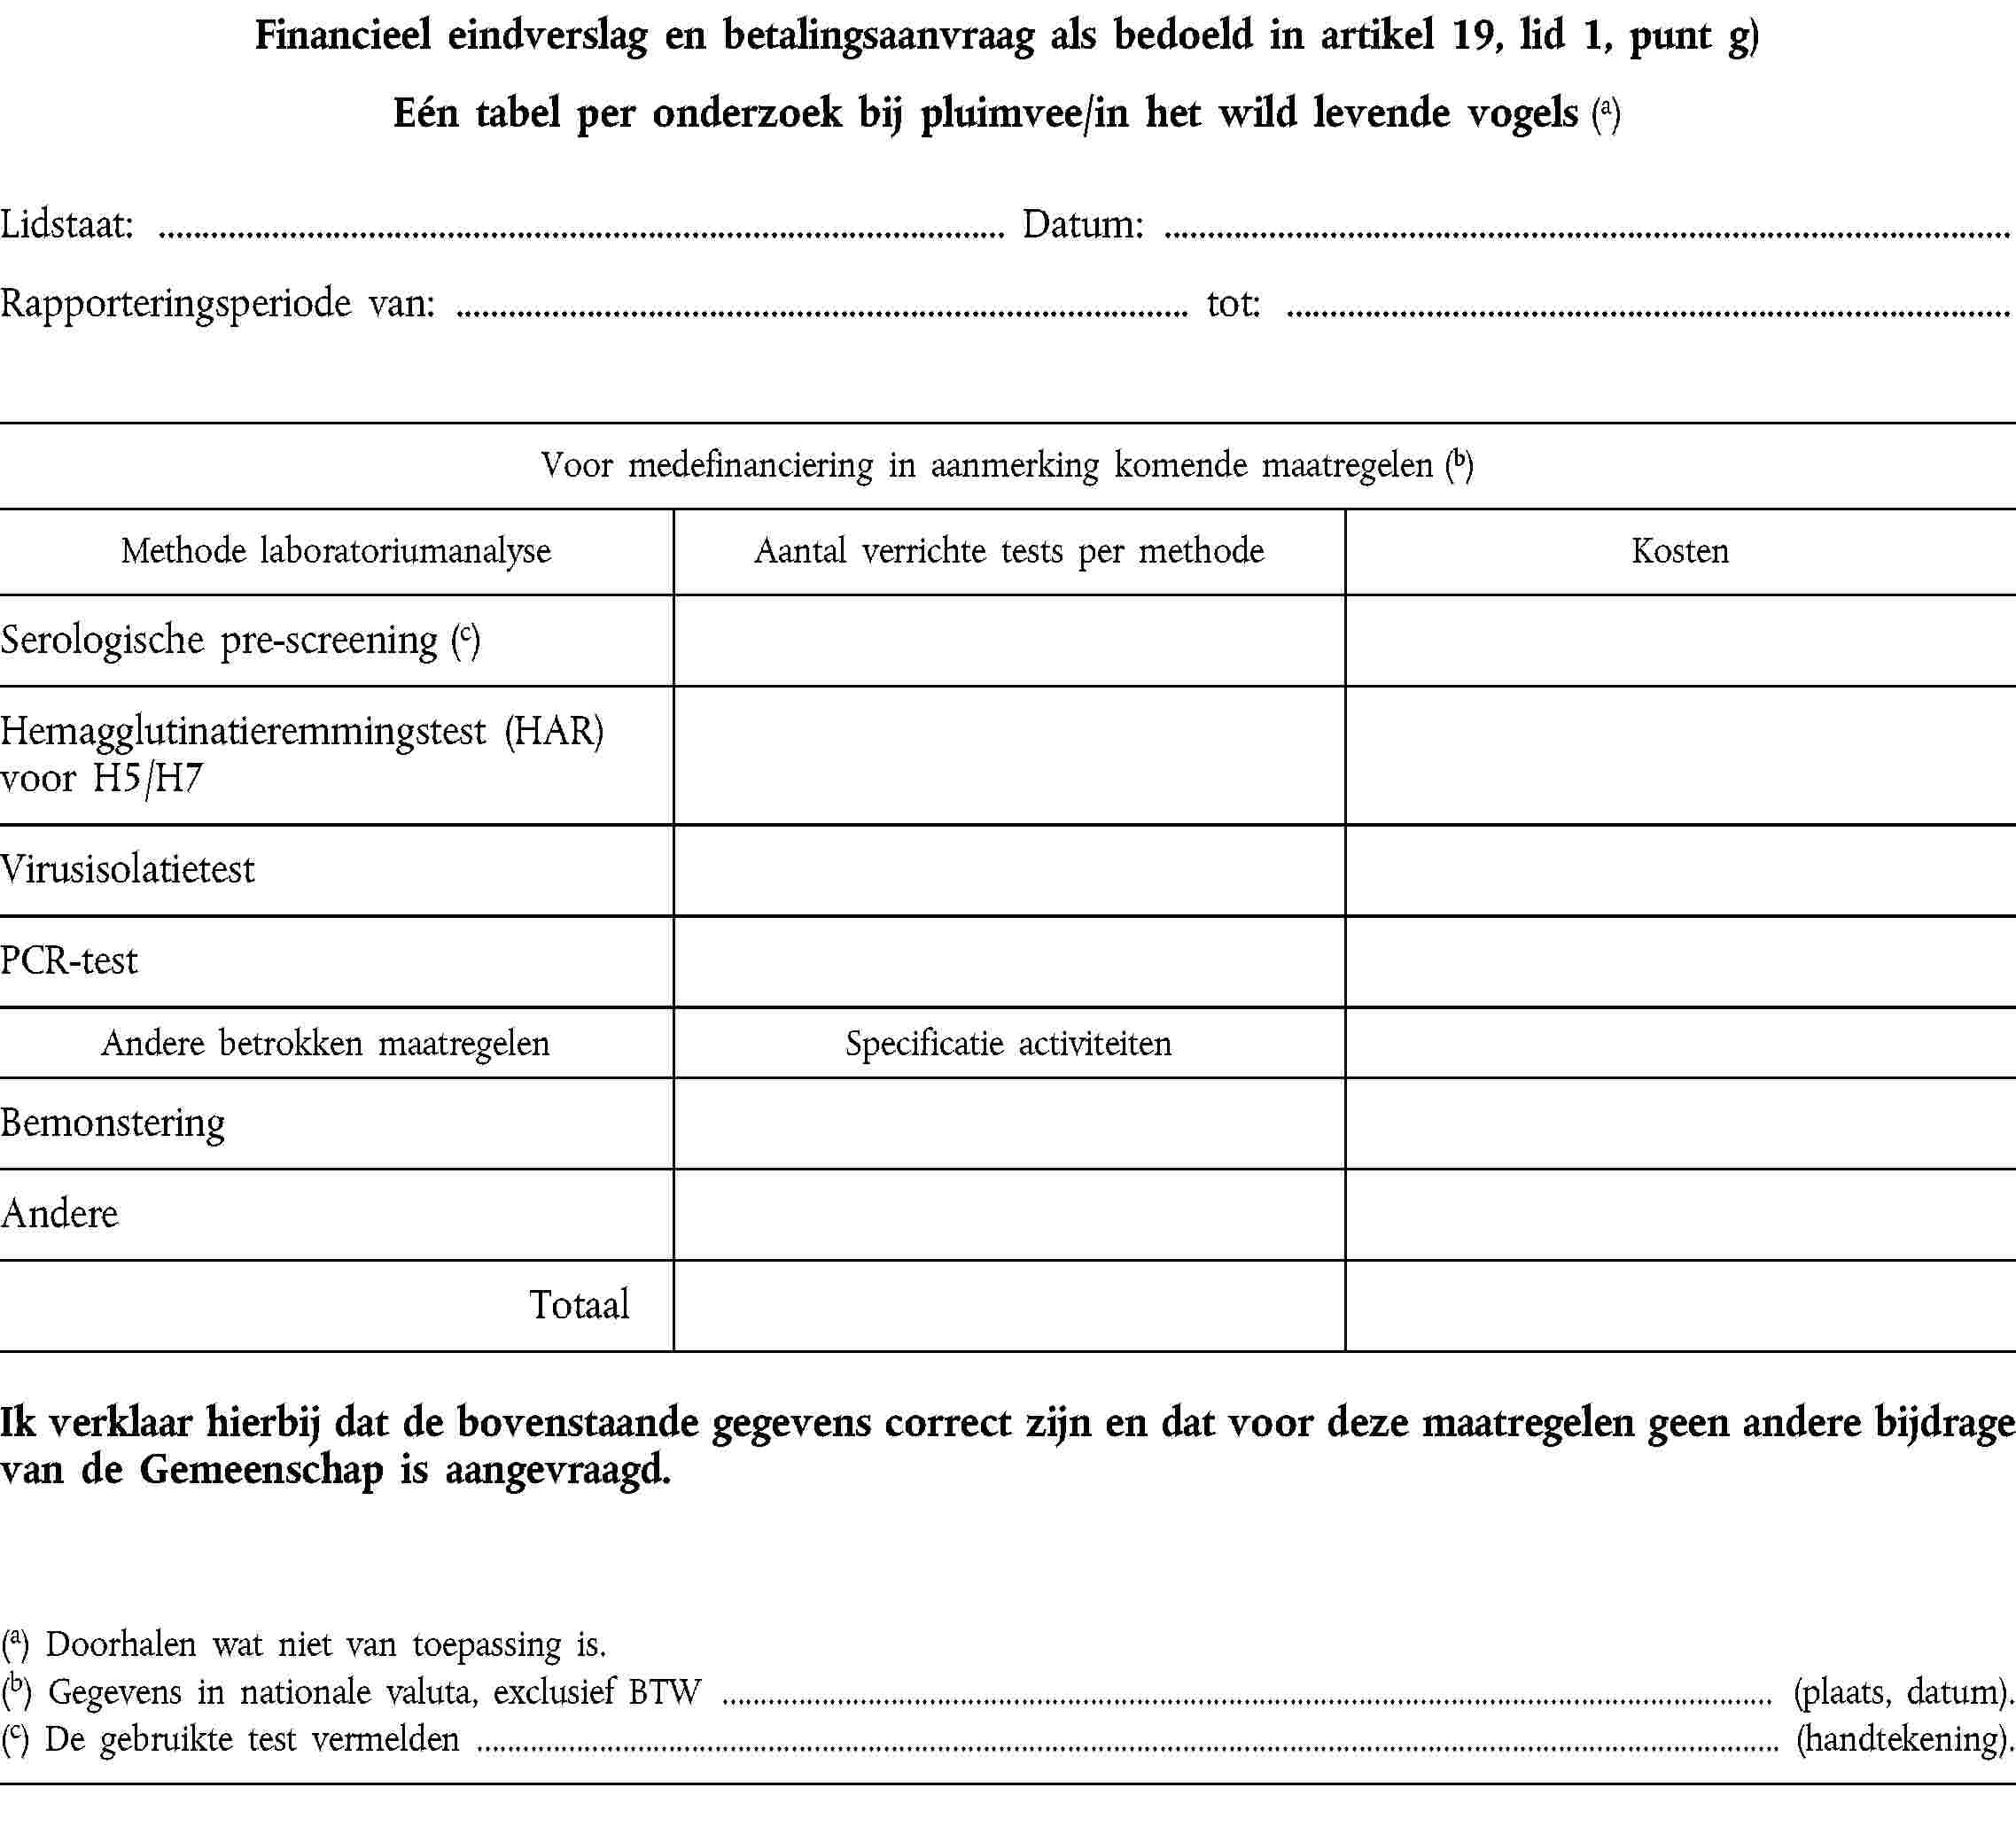 Financieel eindverslag en betalingsaanvraag als bedoeld in artikel 19, lid 1, punt g)Eén tabel per onderzoek bij pluimvee/in het wild levende vogels (a)Lidstaat: Datum:Rapporteringsperiode van: tot:Voor medefinanciering in aanmerking komende maatregelen (b)Methode laboratoriumanalyseAantal verrichte tests per methodeKostenSerologische pre-screening (c)Hemagglutinatieremmingstest (HAR) voor H5/H7VirusisolatietestPCR-testAndere betrokken maatregelenSpecificatie activiteitenBemonsteringAndereTotaalIk verklaar hierbij dat de bovenstaande gegevens correct zijn en dat voor deze maatregelen geen andere bijdrage van de Gemeenschap is aangevraagd.(a) Doorhalen wat niet van toepassing is.(b) Gegevens in nationale valuta, exclusief BTW (plaats, datum).(c) De gebruikte test vermelden (handtekening).